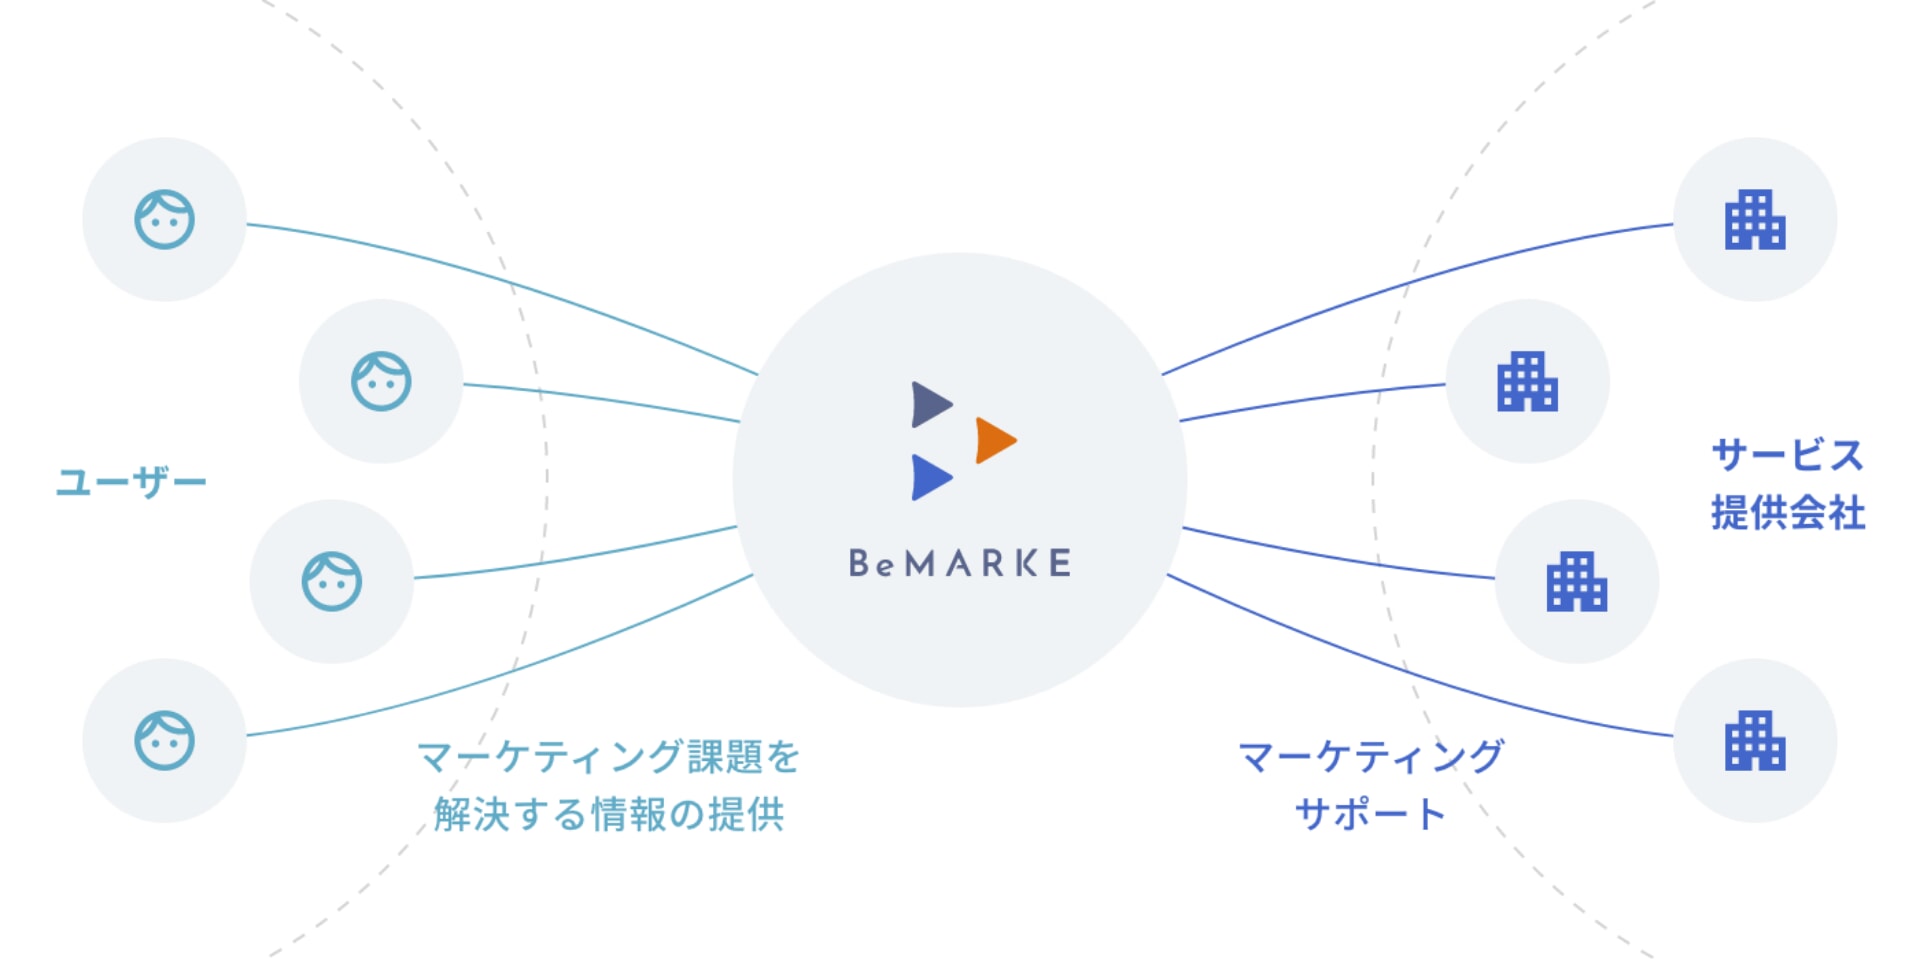 ユーザー マーケティング課題を解決する情報の提供 BeMARKE マーケティングサポート サービス提供会社